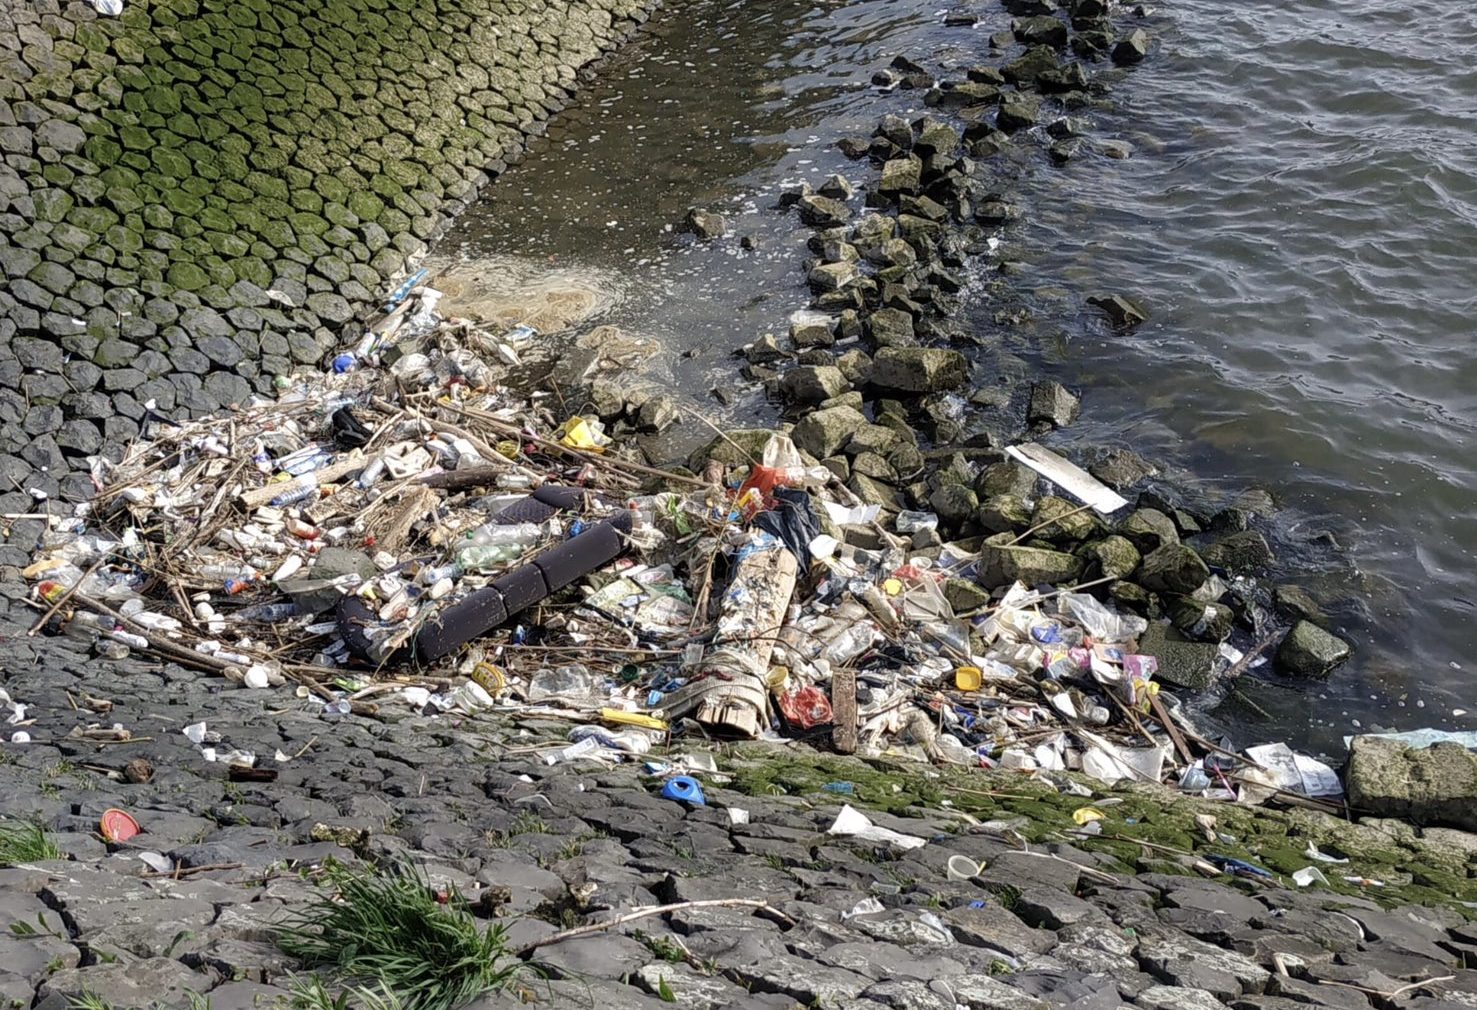 Terugkerende afvalsoep in de Maashaven: wie is er verantwoordelijk?